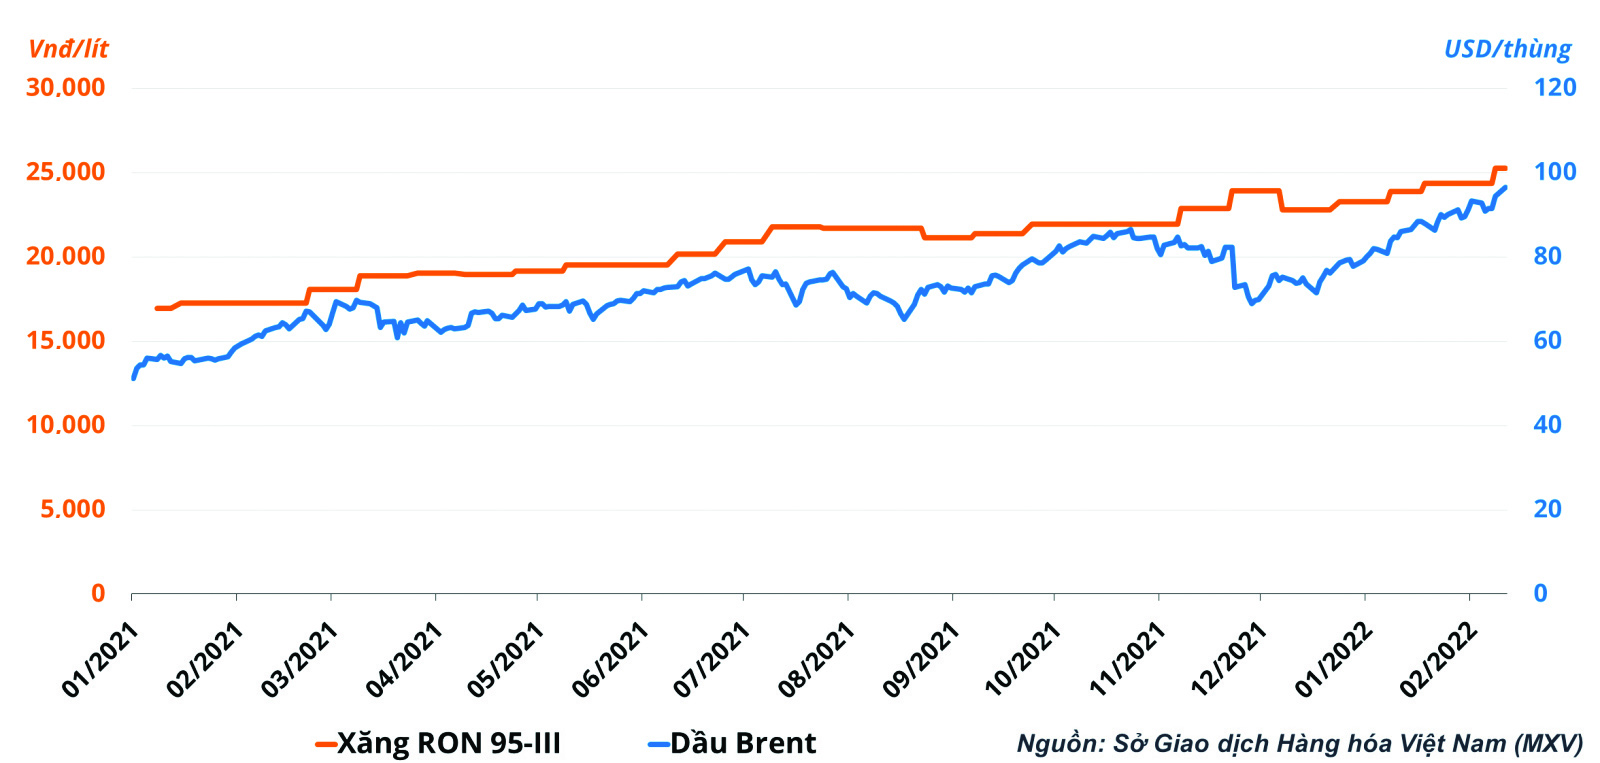  Diễn biến giá dầu thô thế giới và giá xăng RON95-III trong nước